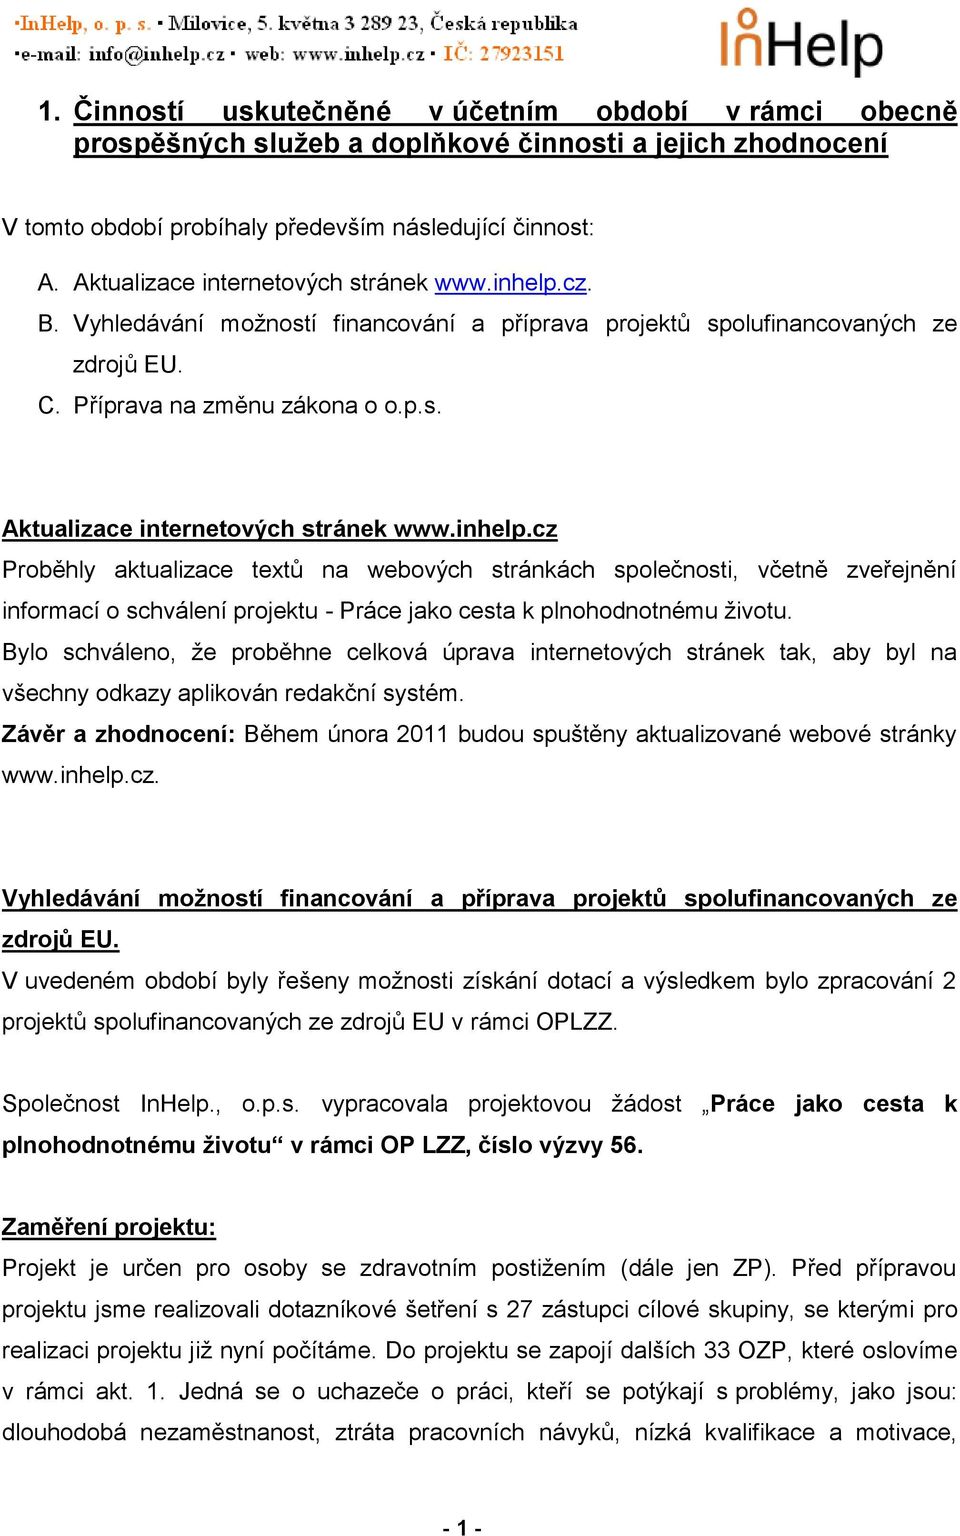 inhelp.cz Proběhly aktualizace textů na webových stránkách společnosti, včetně zveřejnění informací o schválení projektu - Práce jako cesta k plnohodnotnému životu.